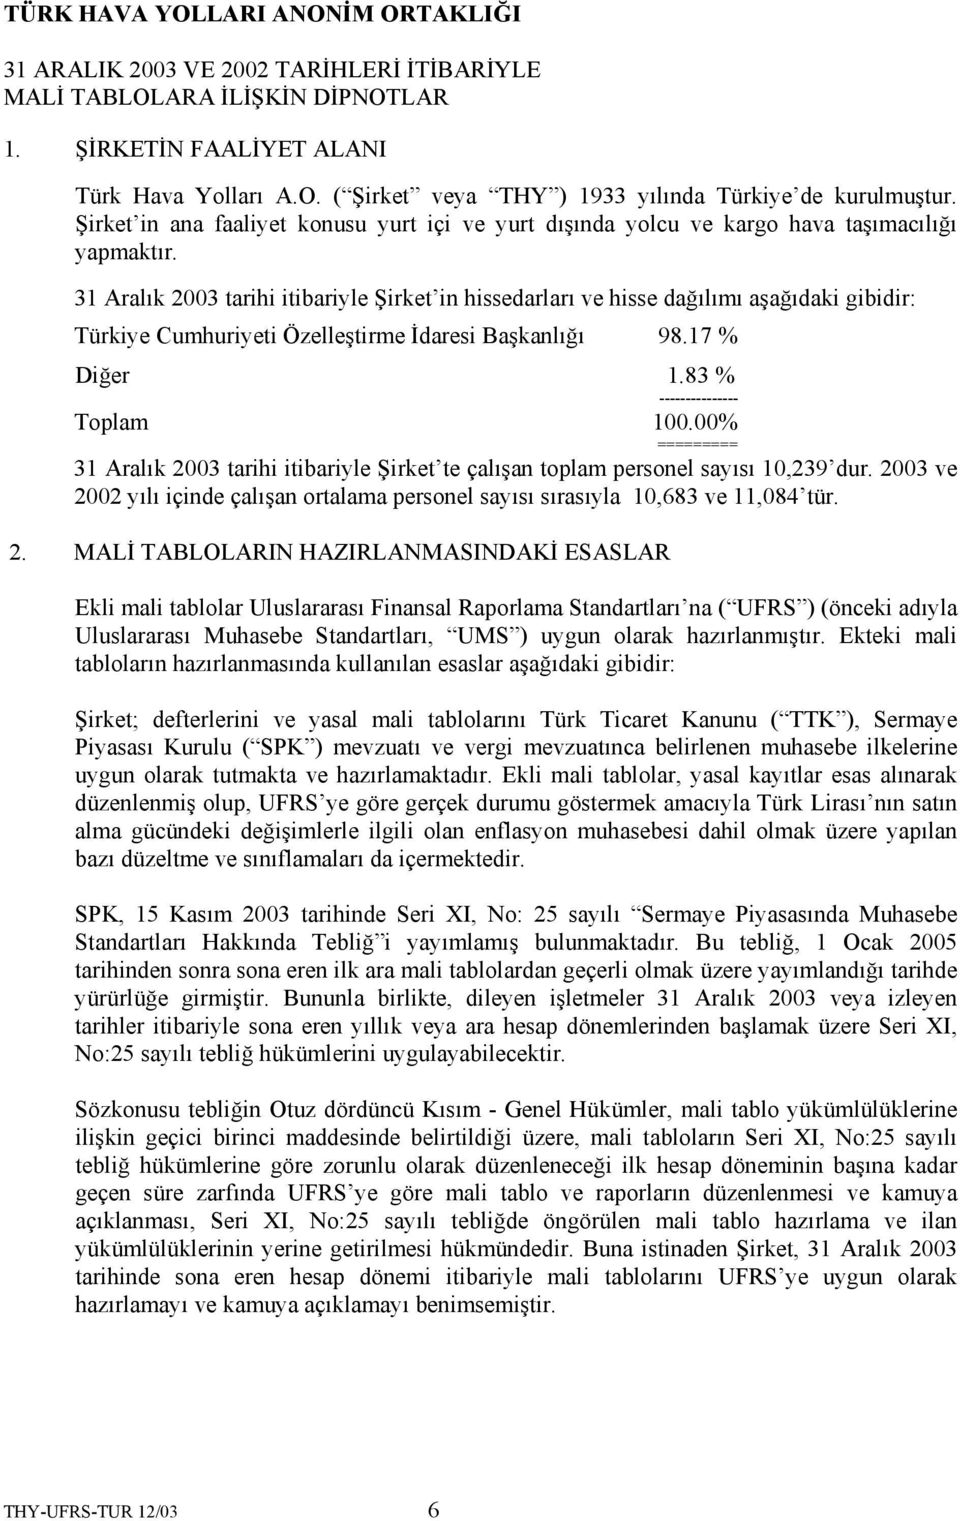 31 Aralık 2003 tarihi itibariyle Şirket in hissedarları ve hisse dağılımı aşağıdaki gibidir: Türkiye Cumhuriyeti Özelleştirme İdaresi Başkanlığı 98.17 % Diğer 1.83 % --------------- Toplam 100.